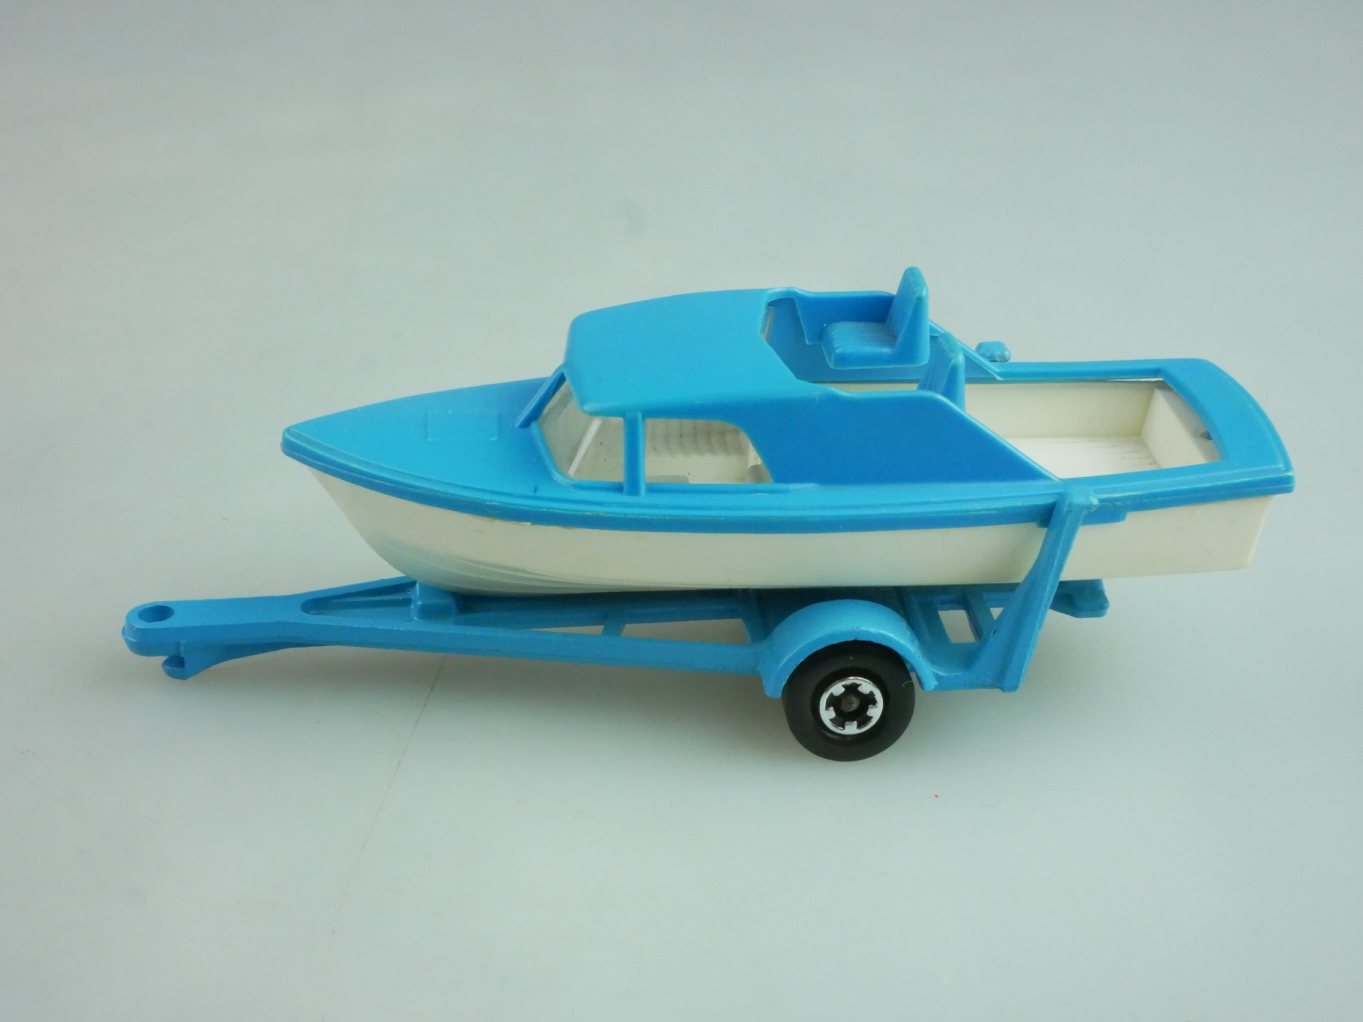 09-A Boat & Trailer - 59568